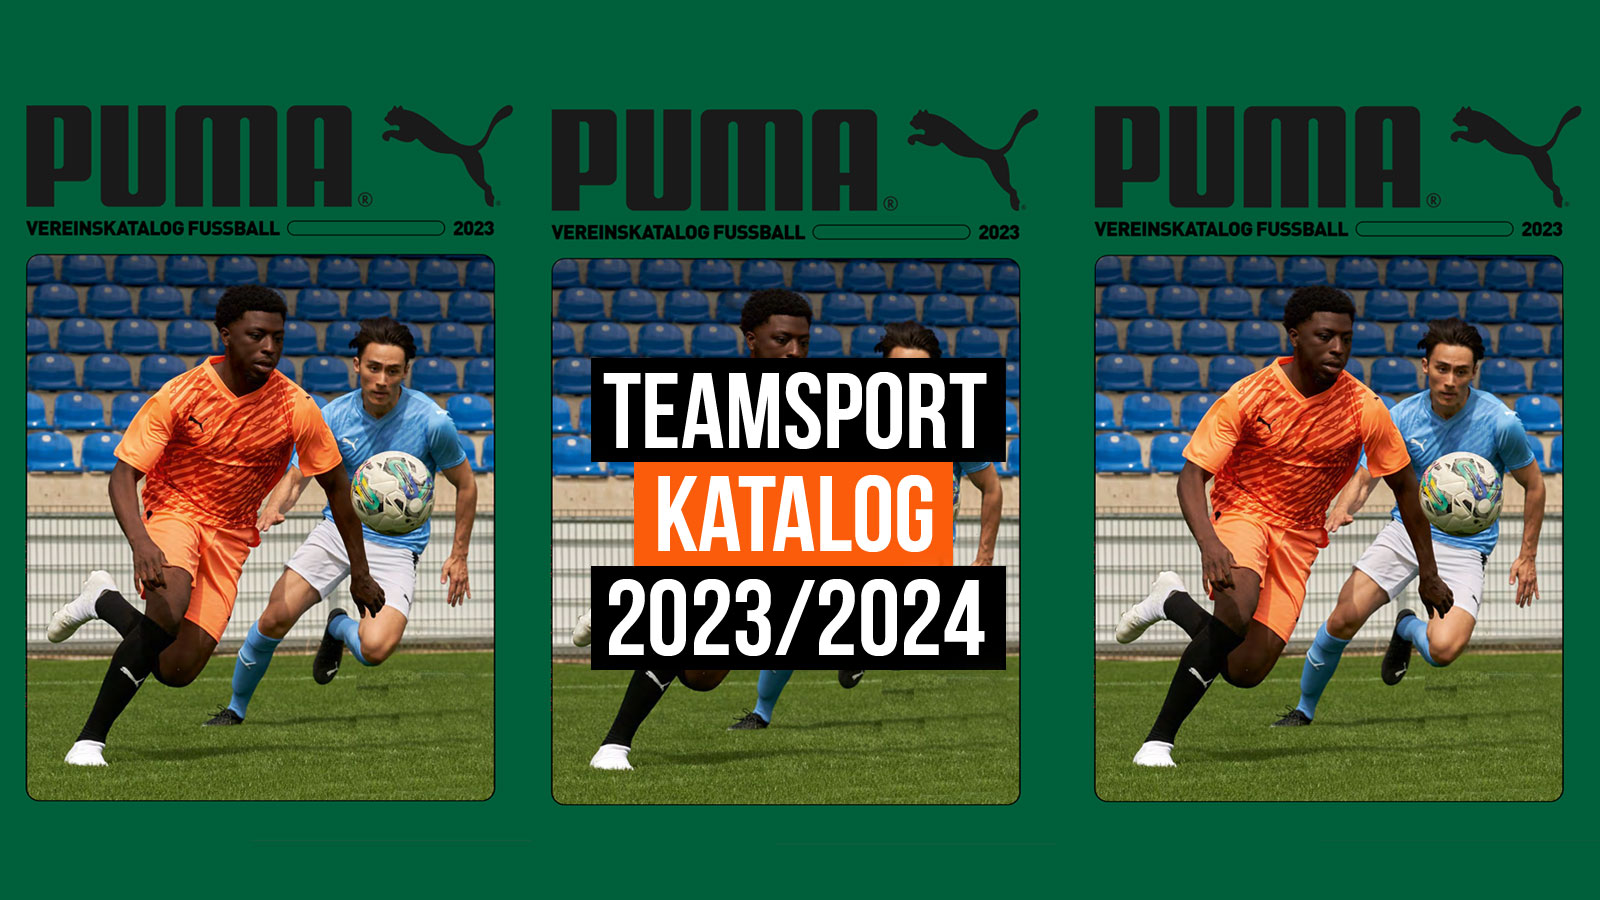 Der Puma Katalog 2023/2024 für den Fußball und Teamsport